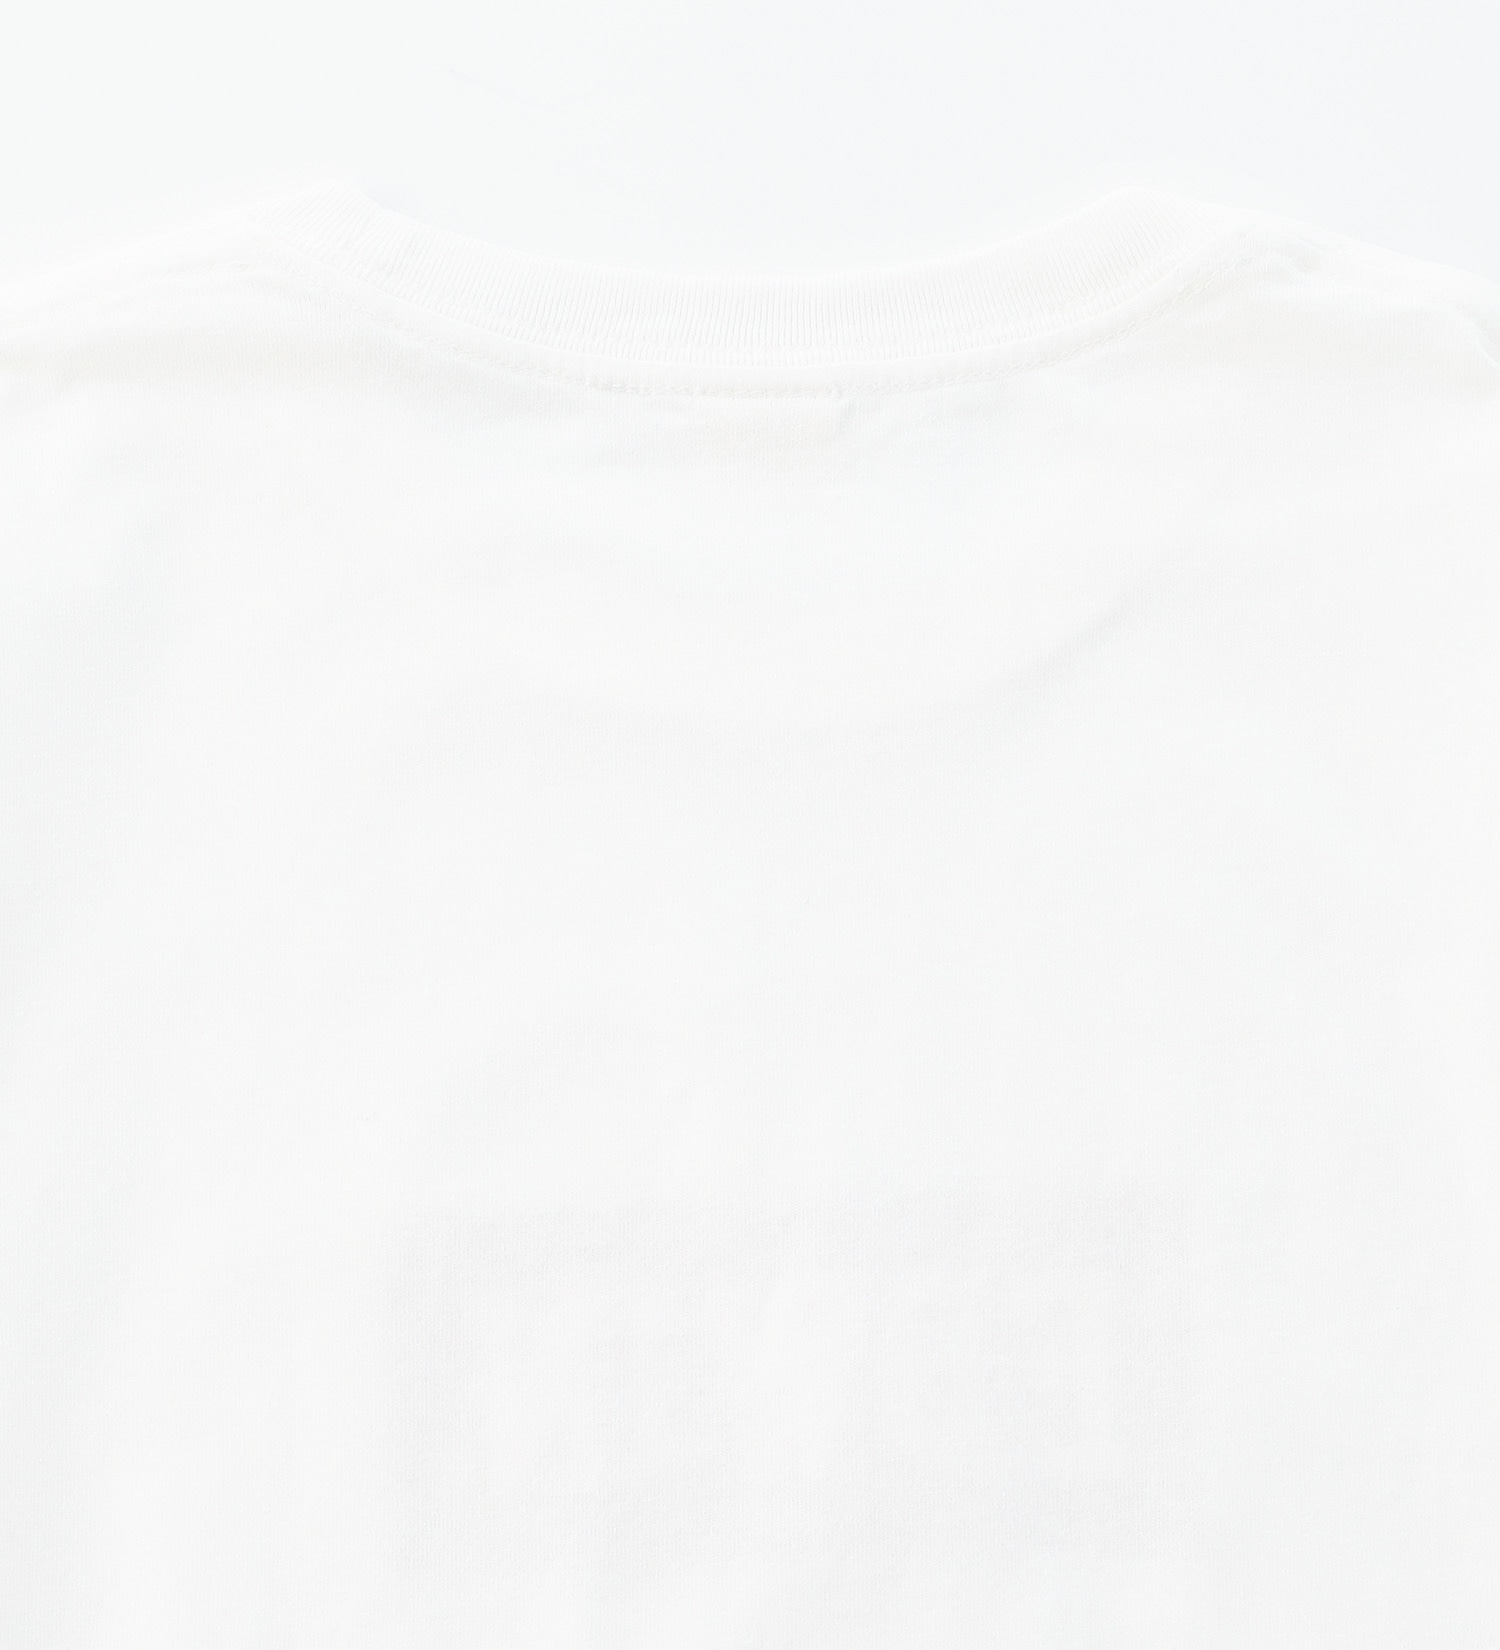 EDWIN(エドウイン)のボックスロゴプリントTシャツ 半袖【アウトレット店舗・WEB限定】|トップス/Tシャツ/カットソー/メンズ|ホワイト